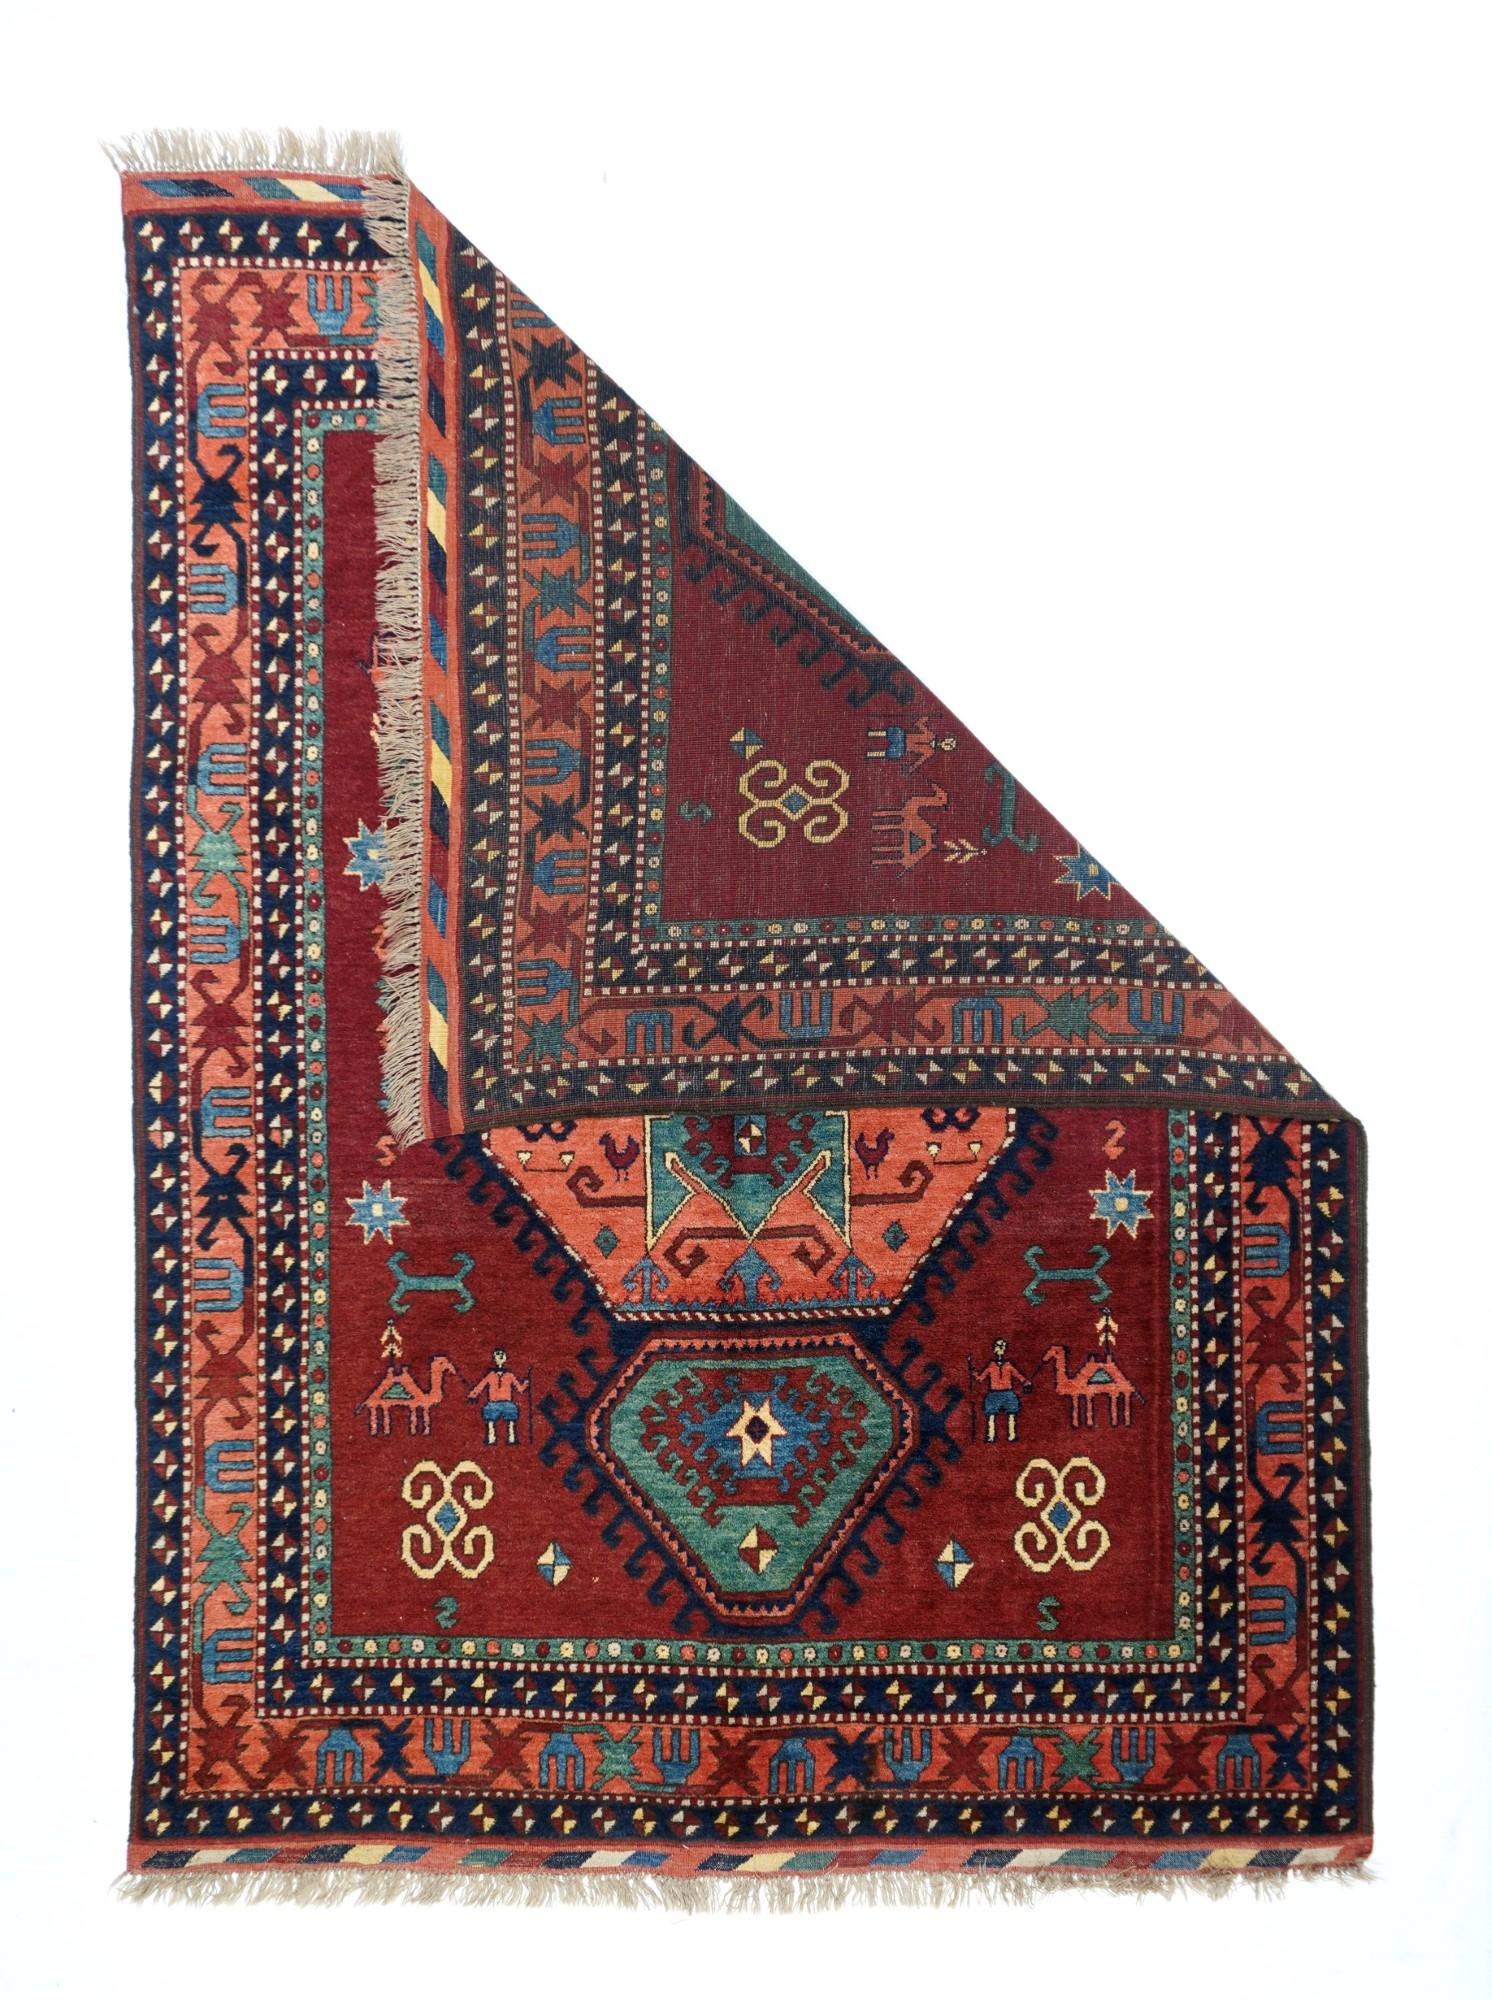 Vintage Kazak Design Teppich 5'4'' x 7'1''. Diese moderne Interpretation eines Klassikers zeigt das charakteristische achteckige Medaillon mit einem tealfarbenen geometrischen Palmettenkreuz in der Mitte. Exzentrischer grüner Anhänger mit kleinen